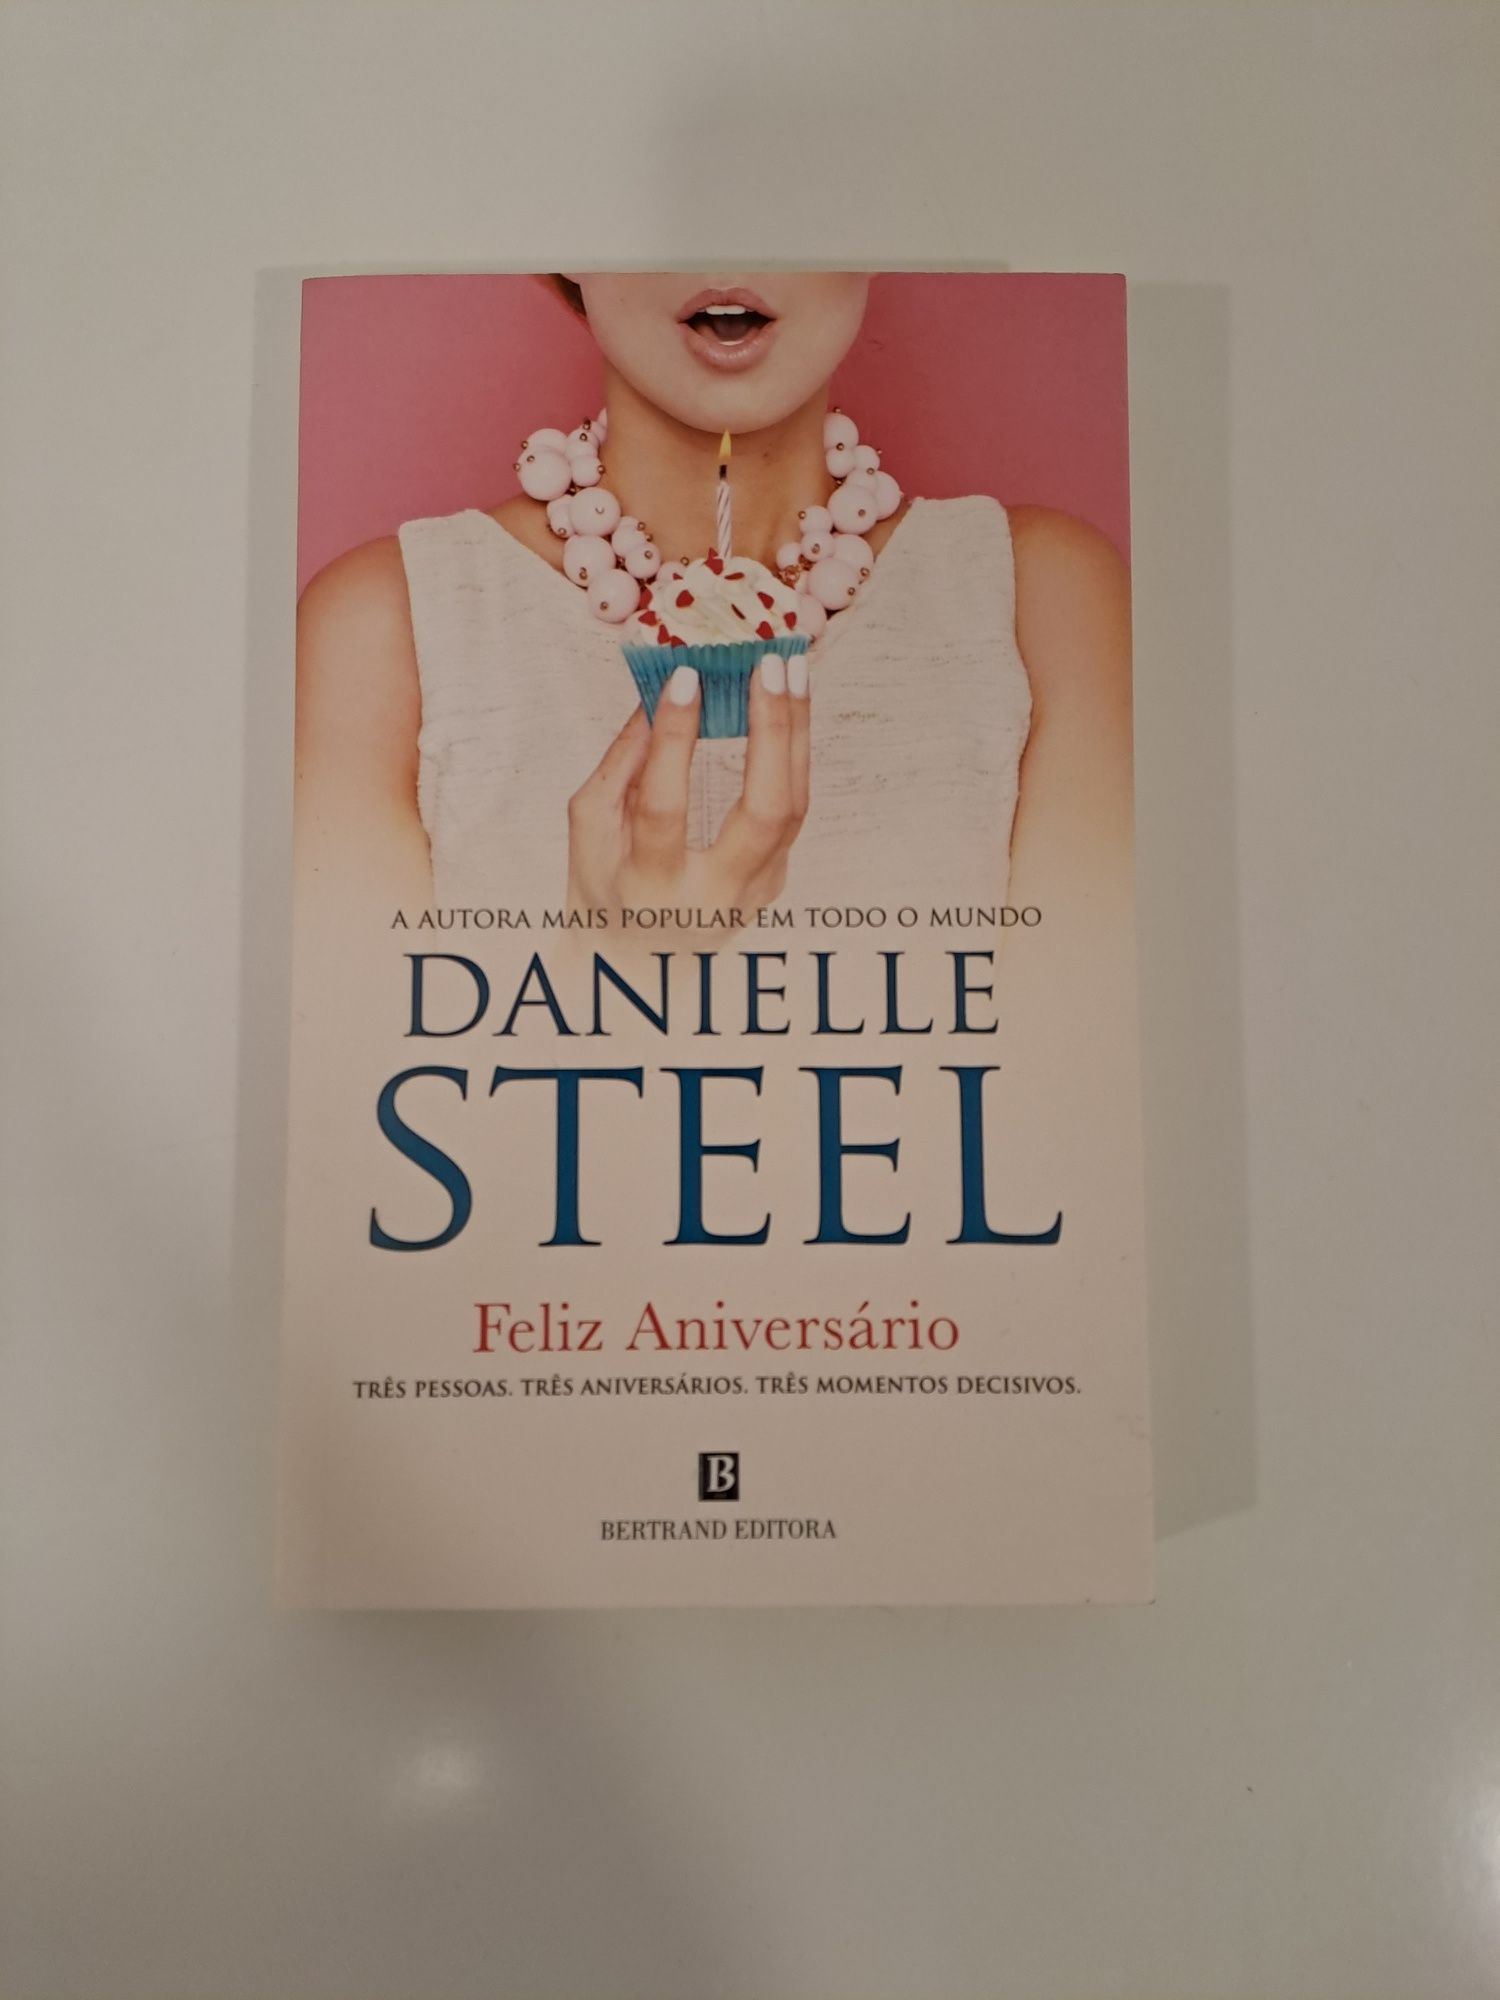 Danielle steel - vários livros